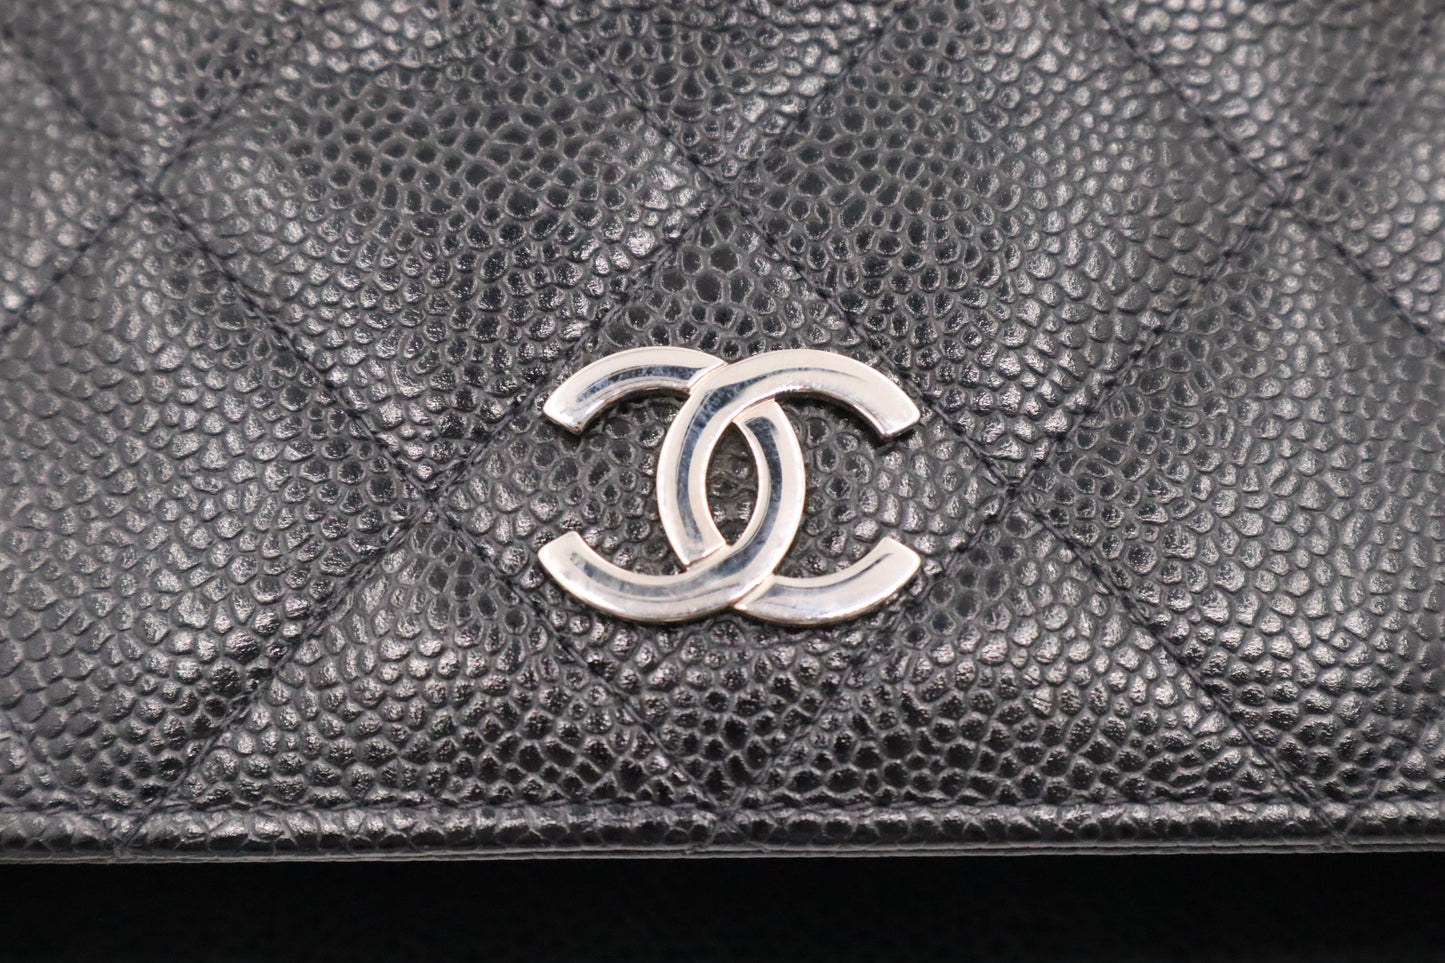 Chanel Small Tote in Black Caviar Leather